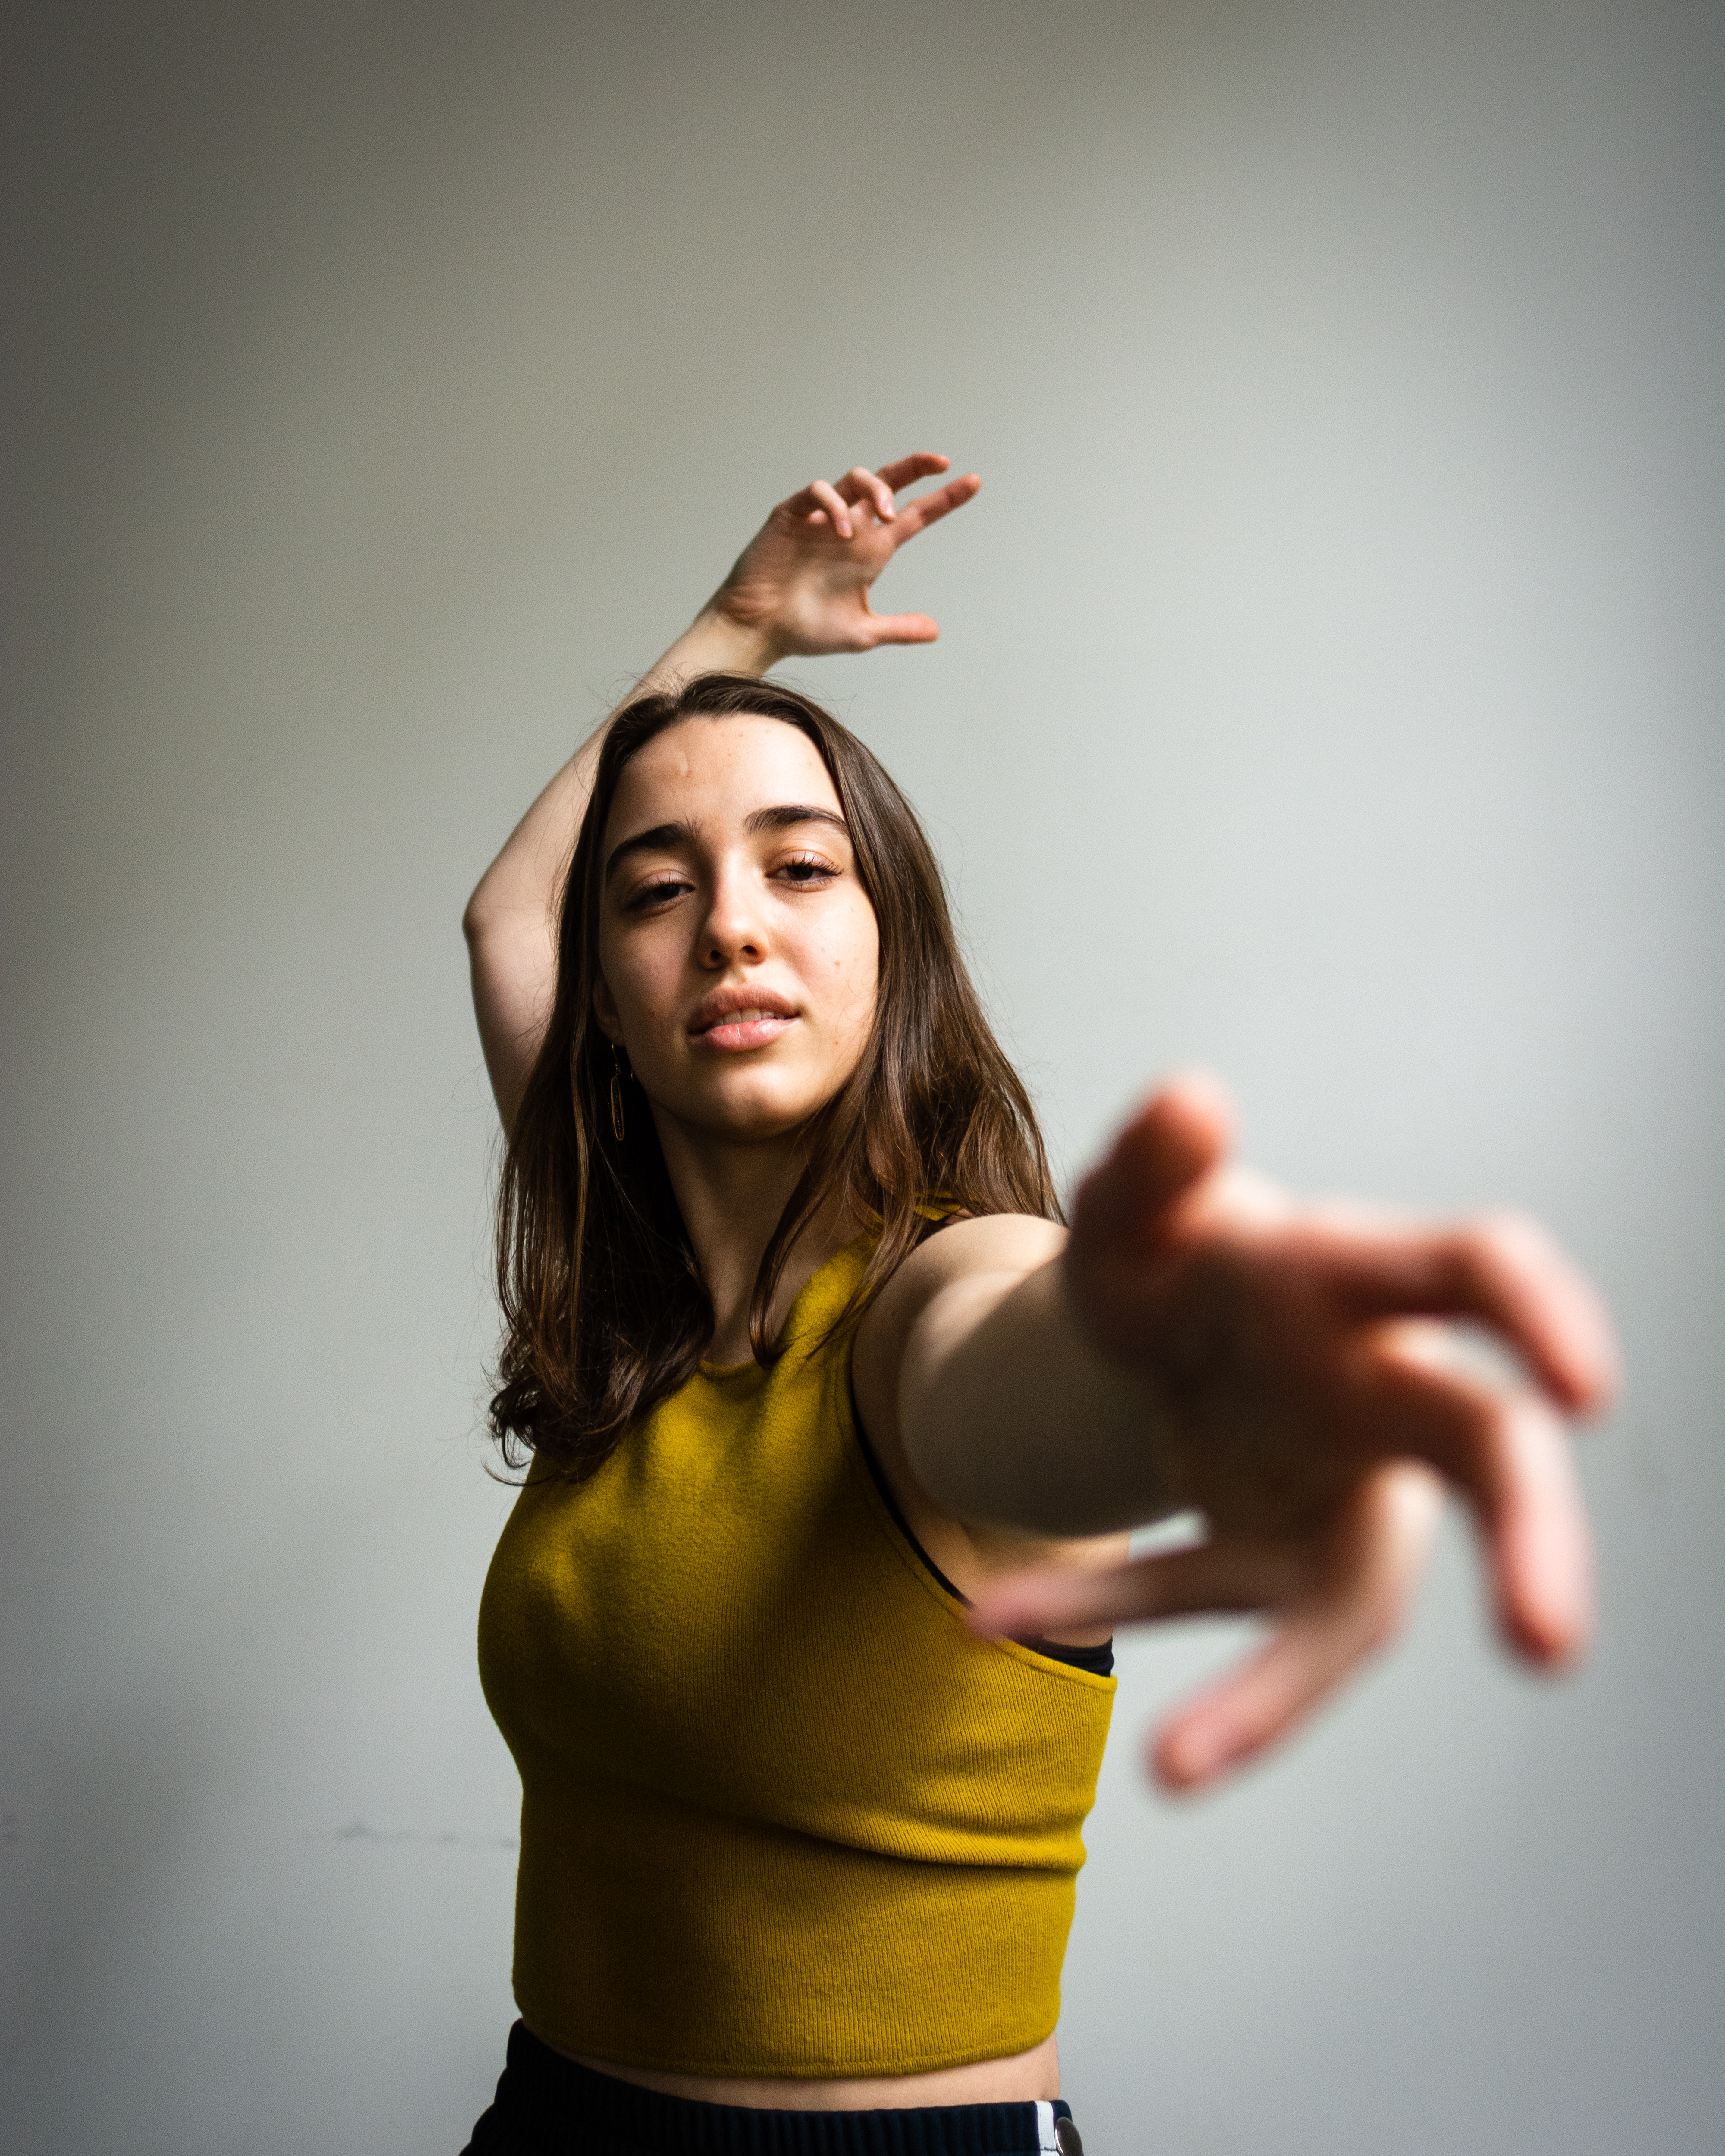 Allison Costa dancing, reaching towards the camera, wearing a yellow shirt 